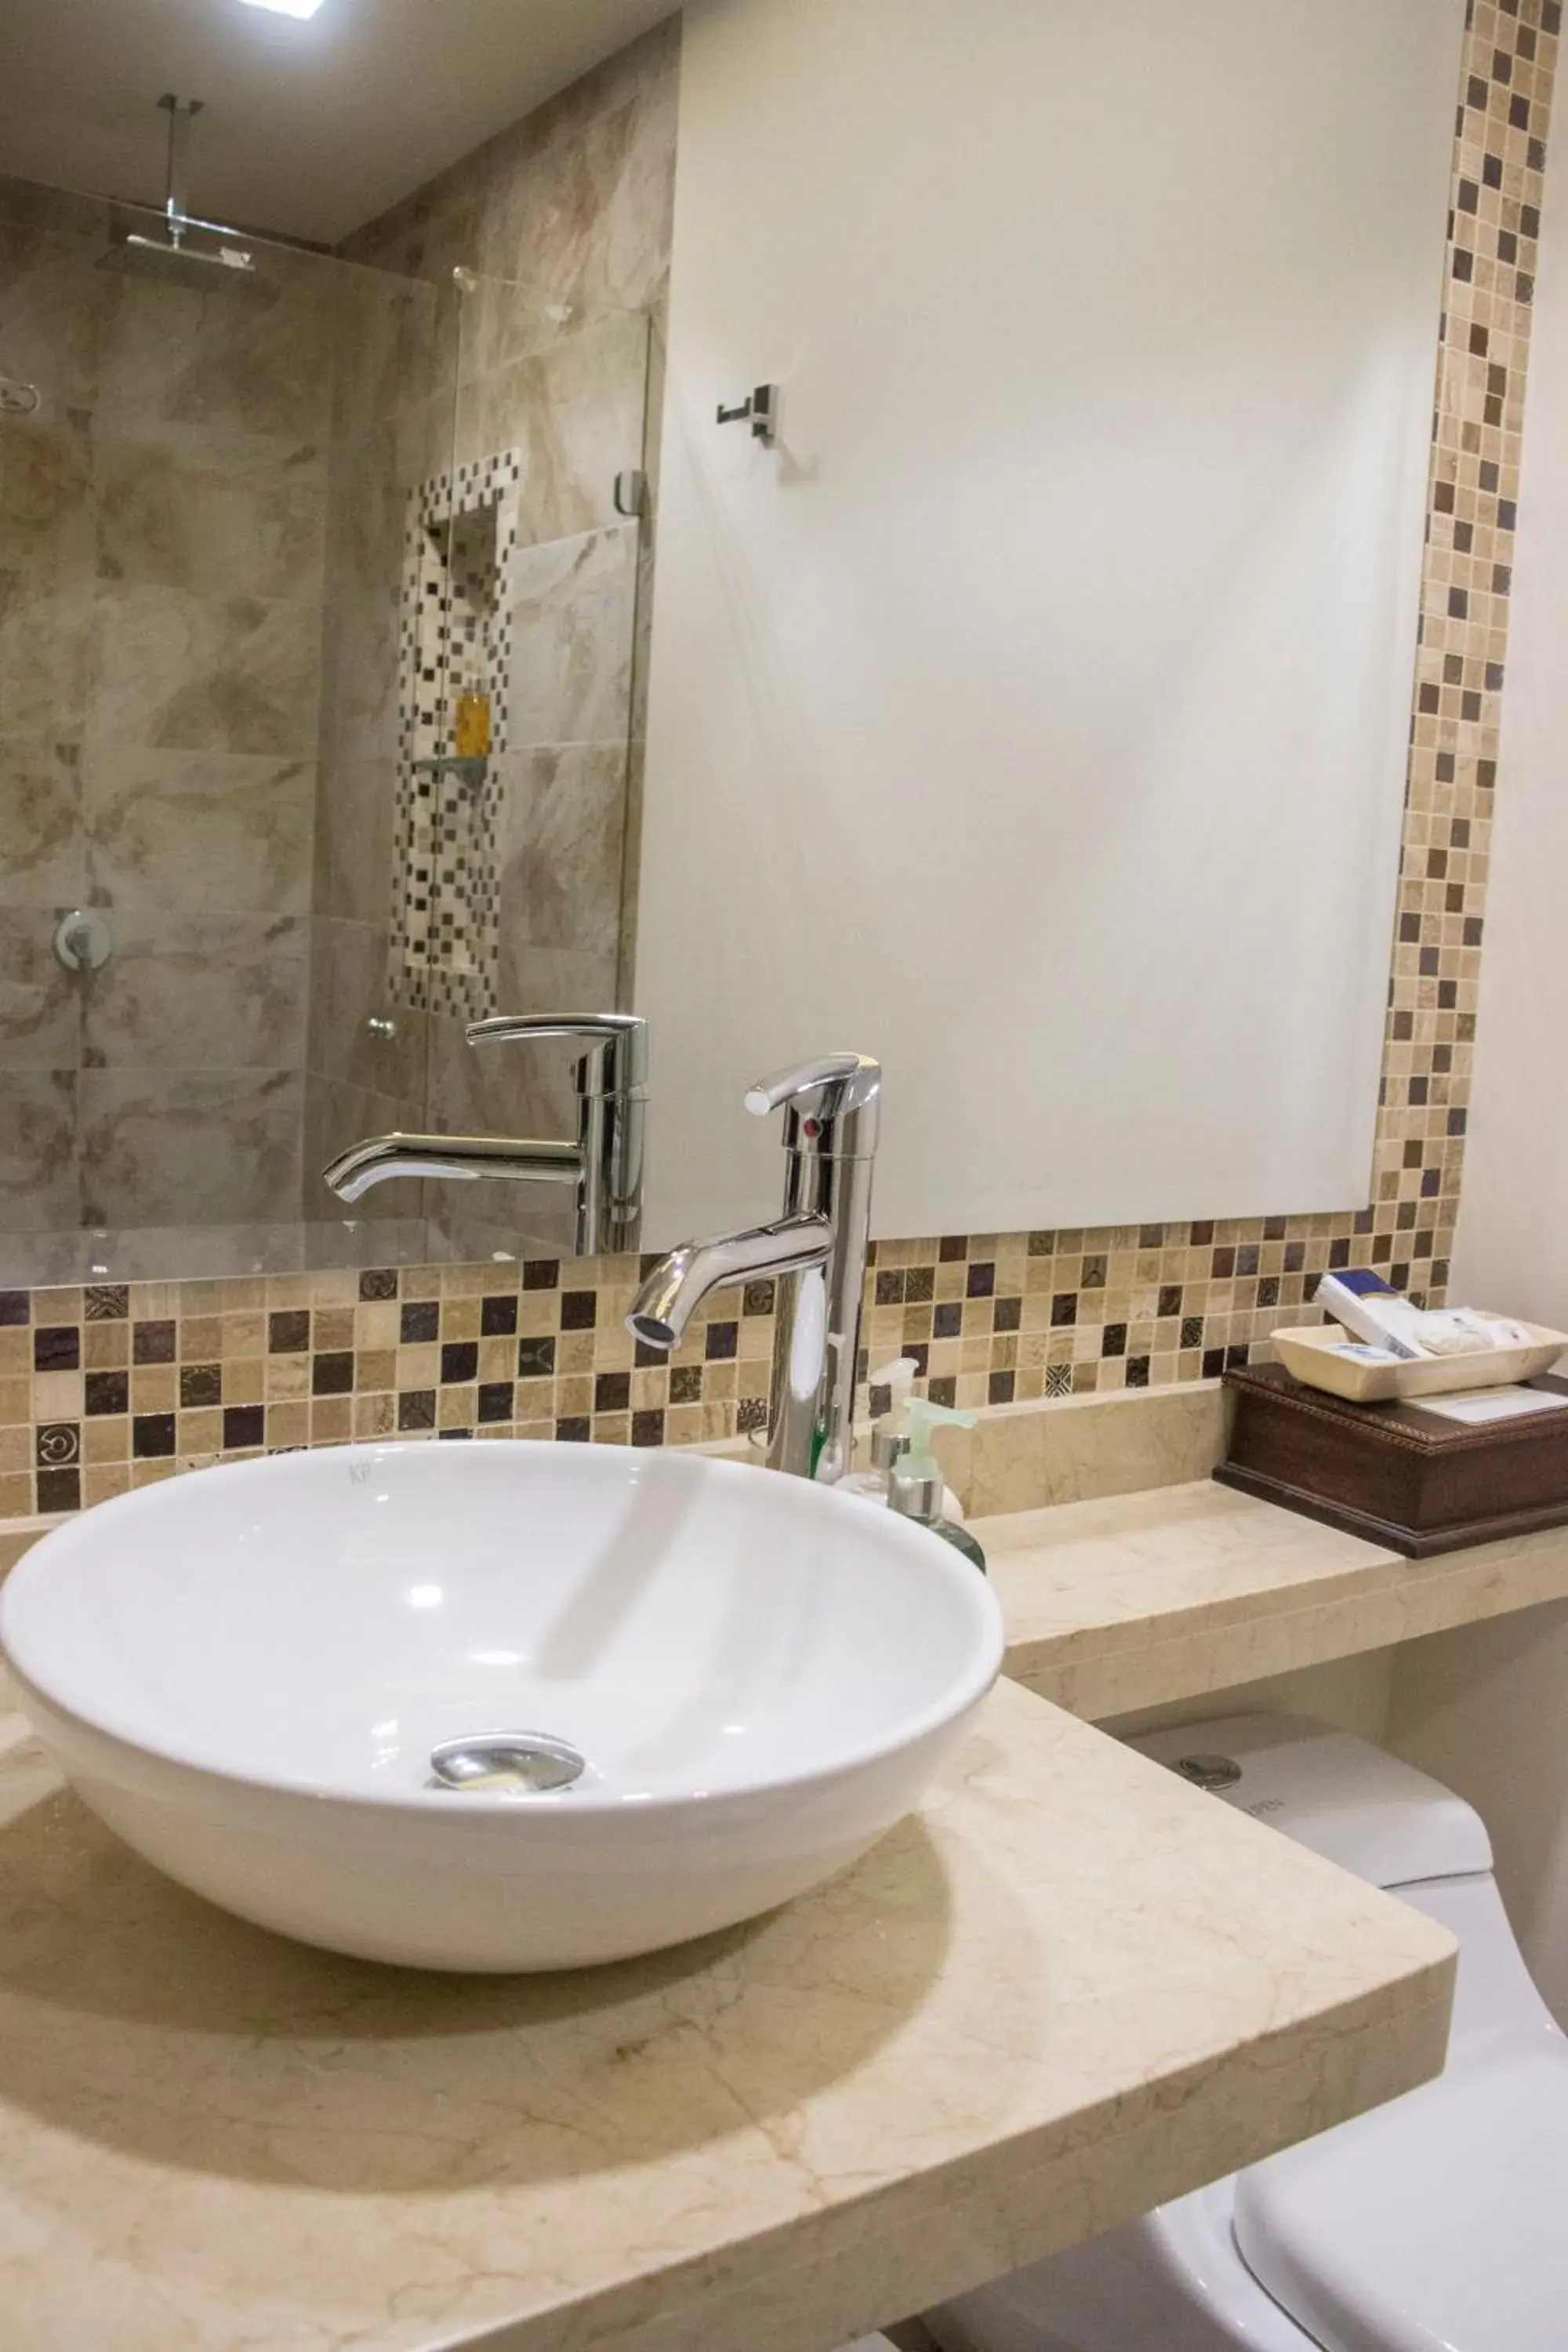 Bathroom in Hotel Castilla Real